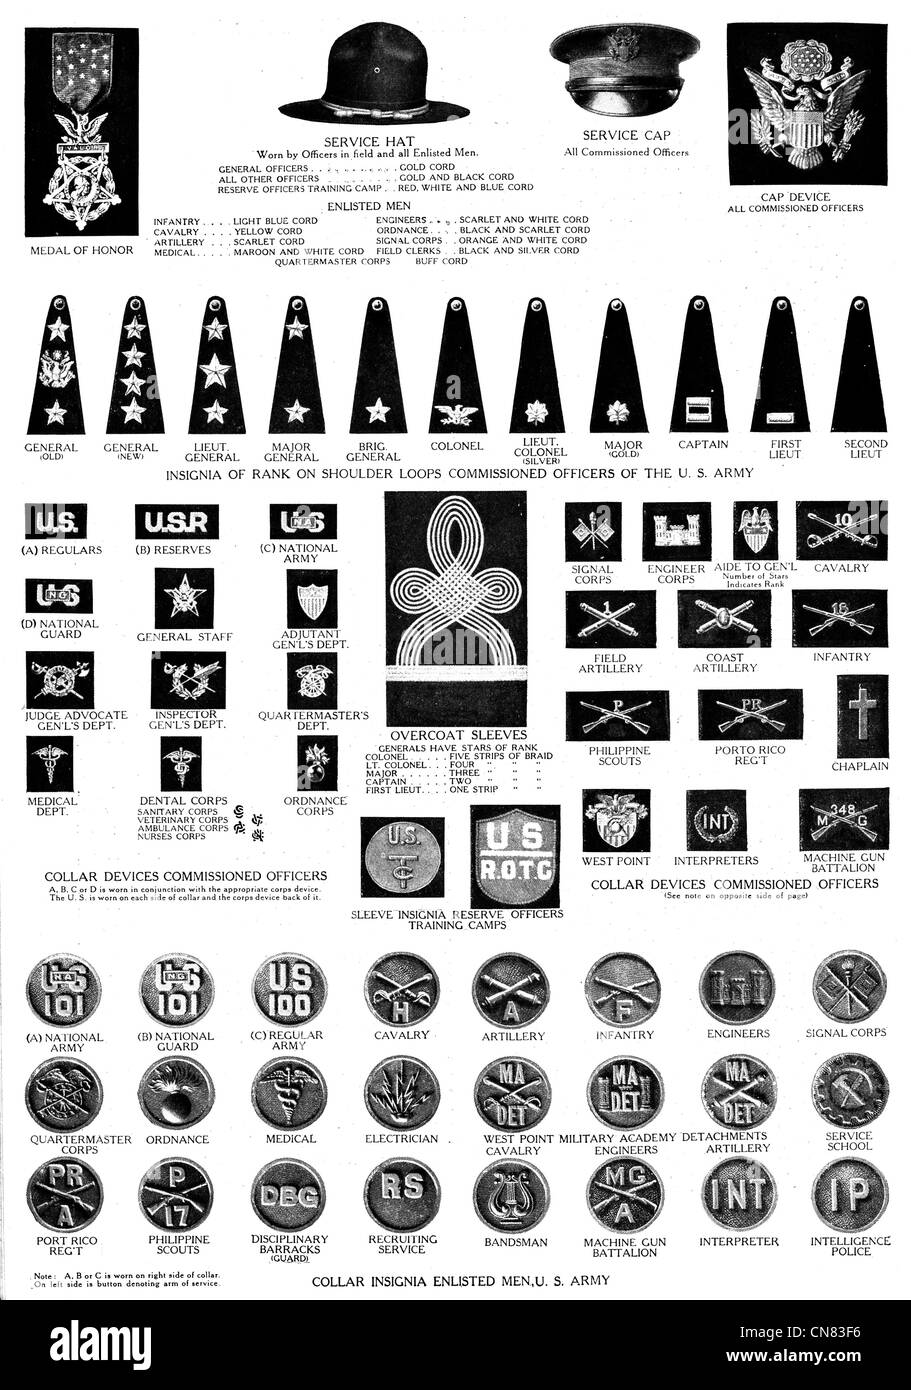 1917 Ehrenmedaille der Vereinigten Staaten allgemeine große Chevrons US  Navy militärische Kragen Abzeichen Hülse Marken Mantel Schulter Blatt cross  Stockfotografie - Alamy